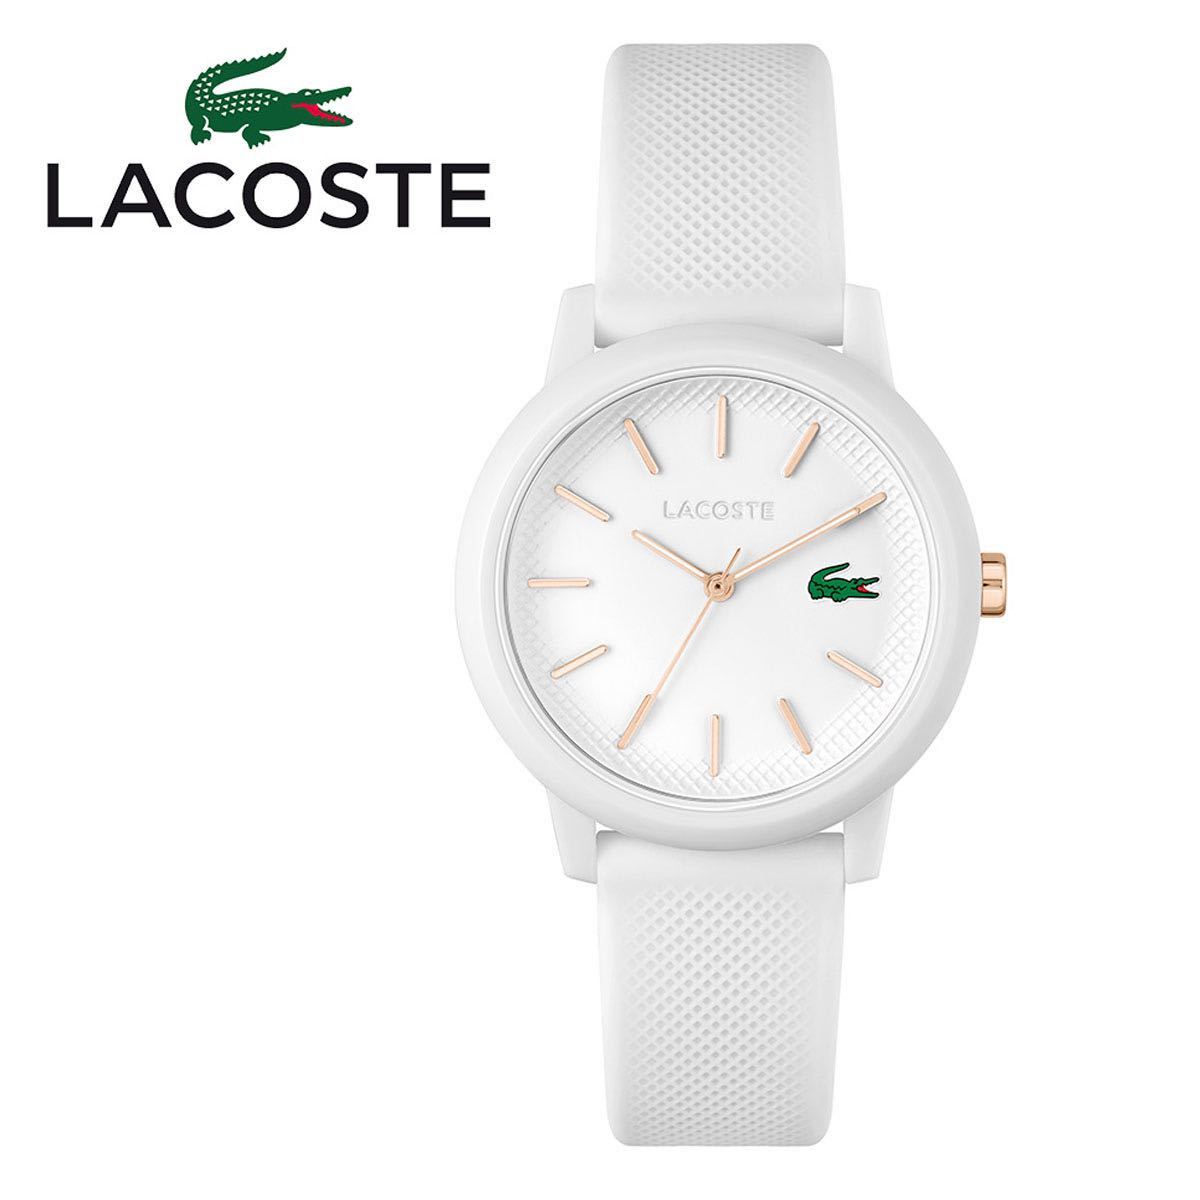 LACOSTE ラコステ L.12.12 腕時計 アナログ 2001211 レディース キッズ ホワイト ローズゴールド 36mm径 ボーイズサイズ 女性 子供 防水_画像1